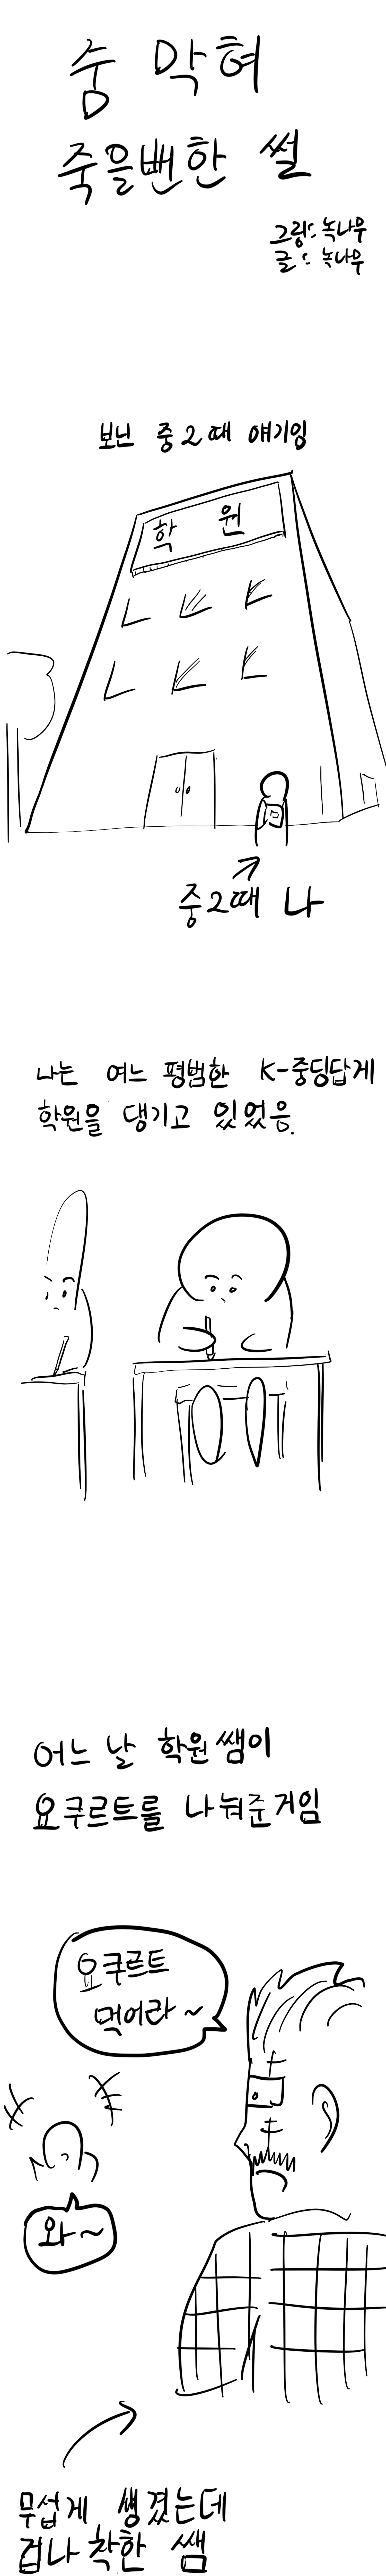 요쿠르트 먹다가 숨막혀 죽을뻔한 만화.manhwa